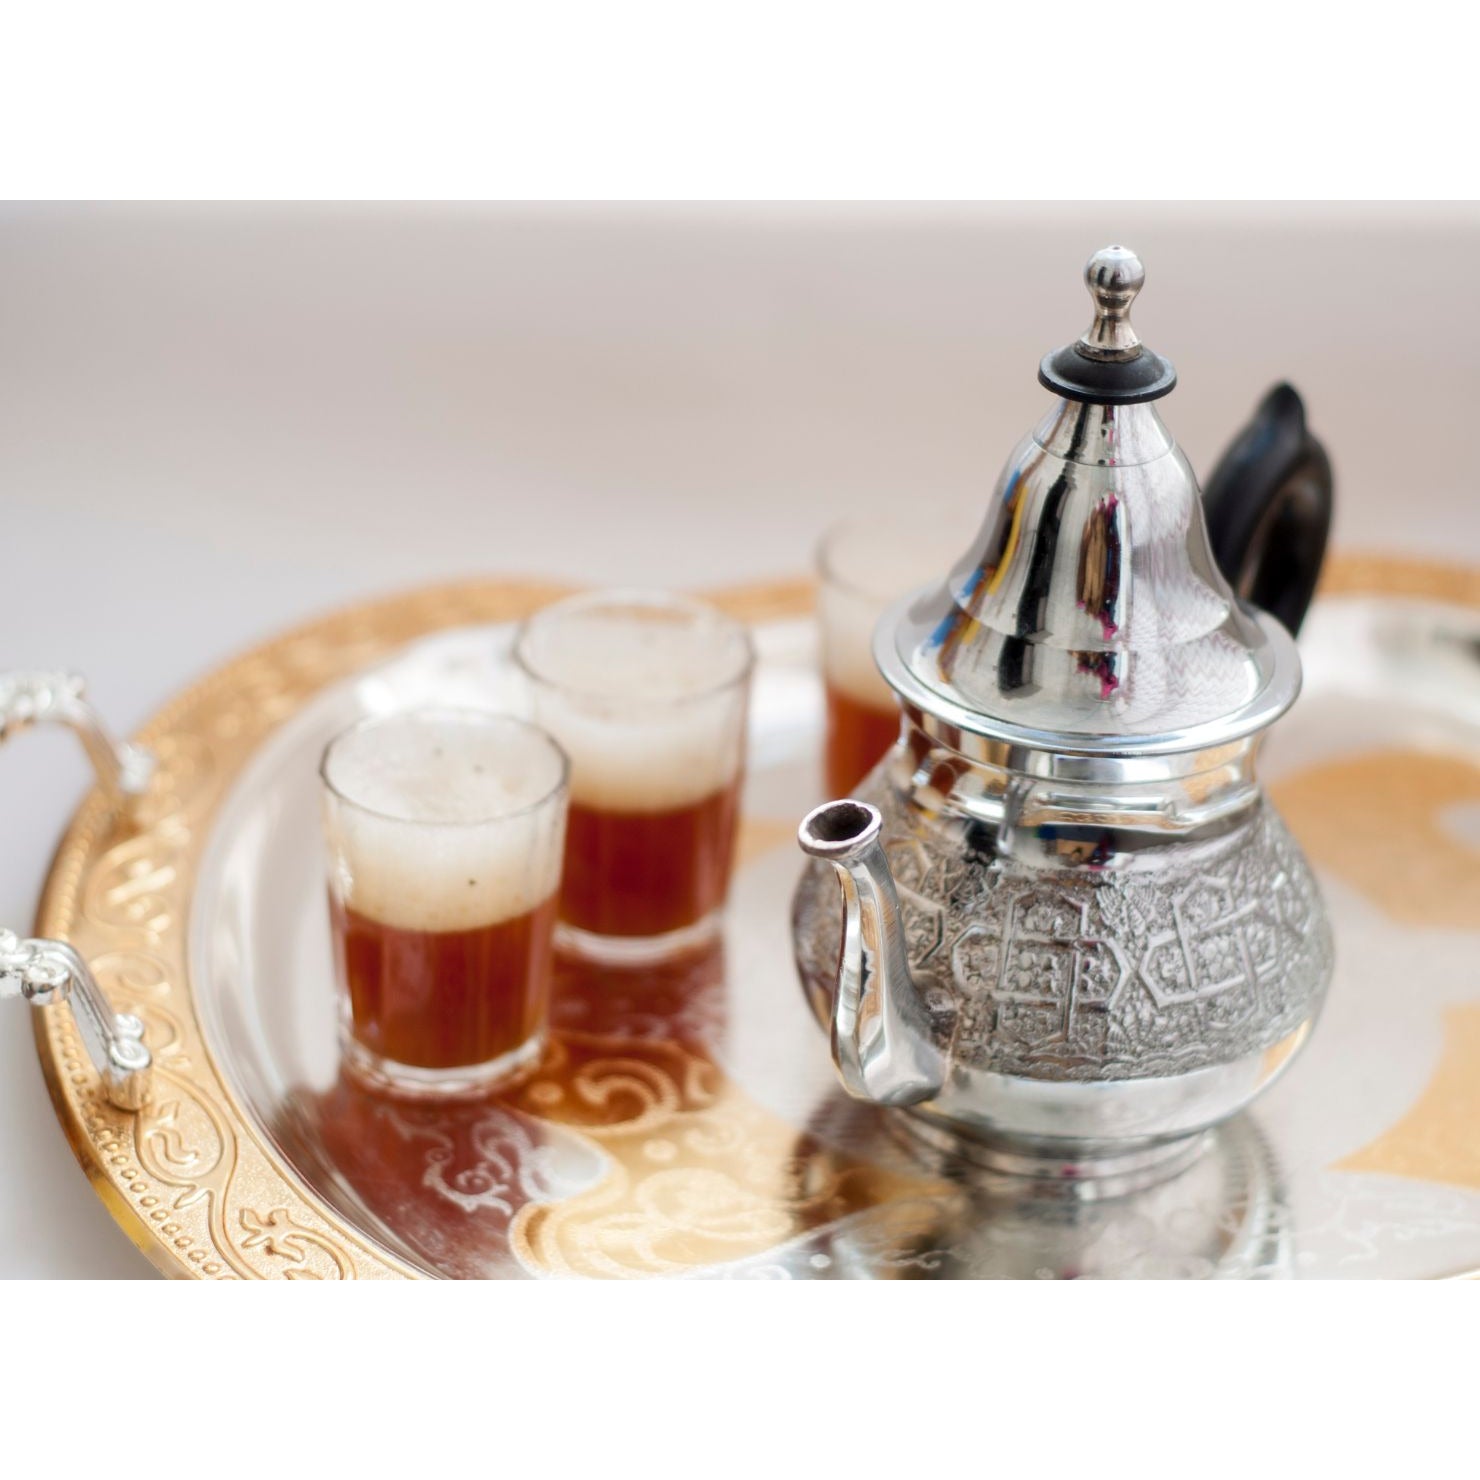 Lata de té Habibi (ser querido)